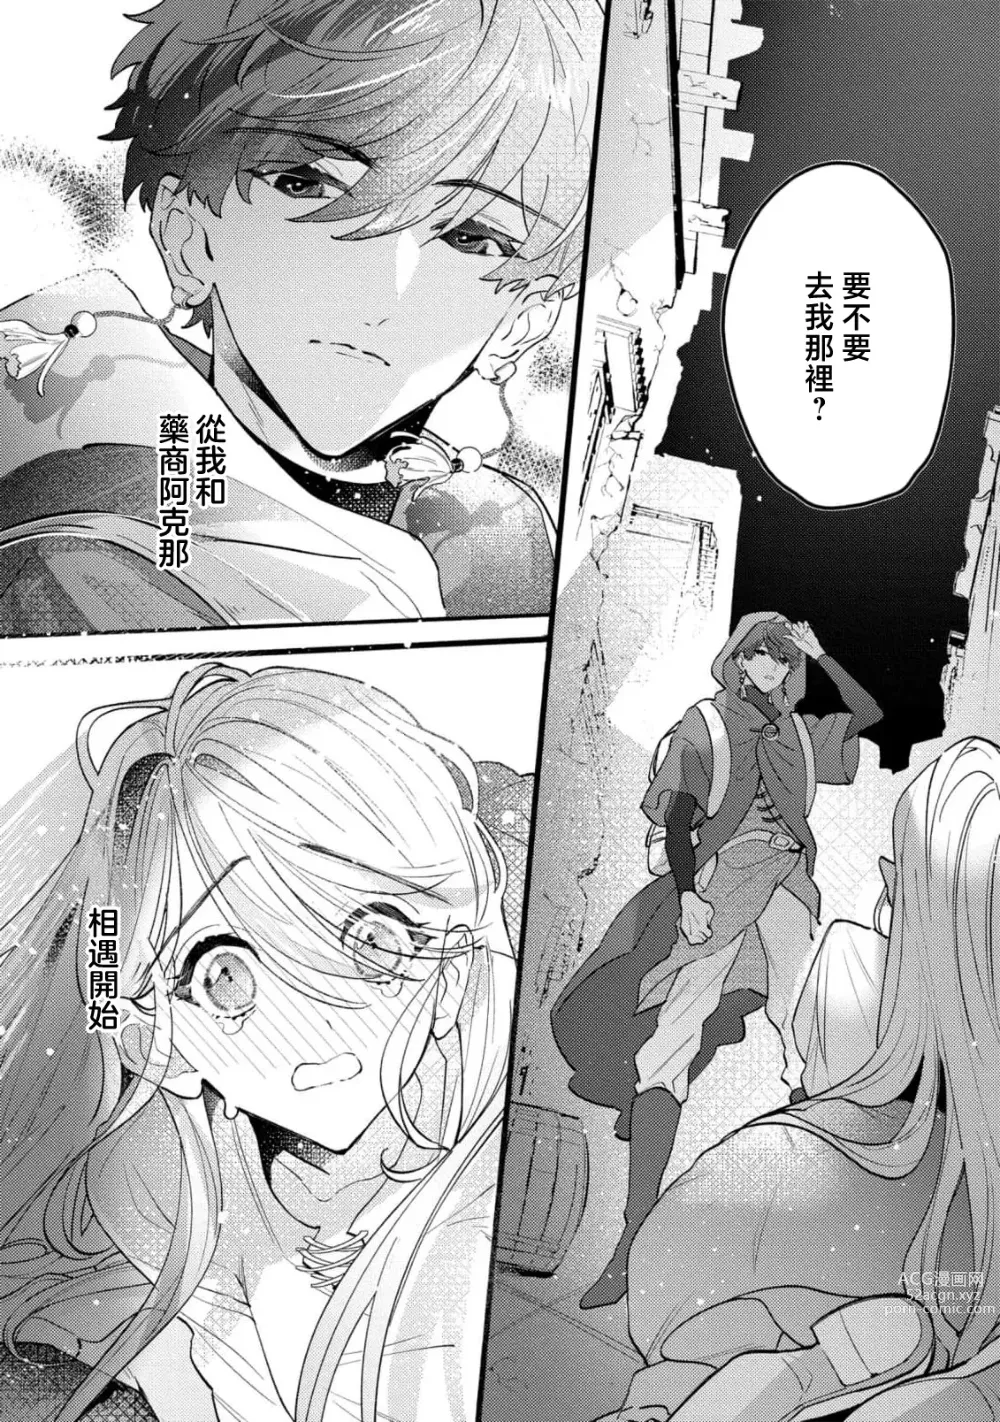 Page 5 of manga 被捡后在转生地尝试自立时身心都被笨拙地执着抱拥